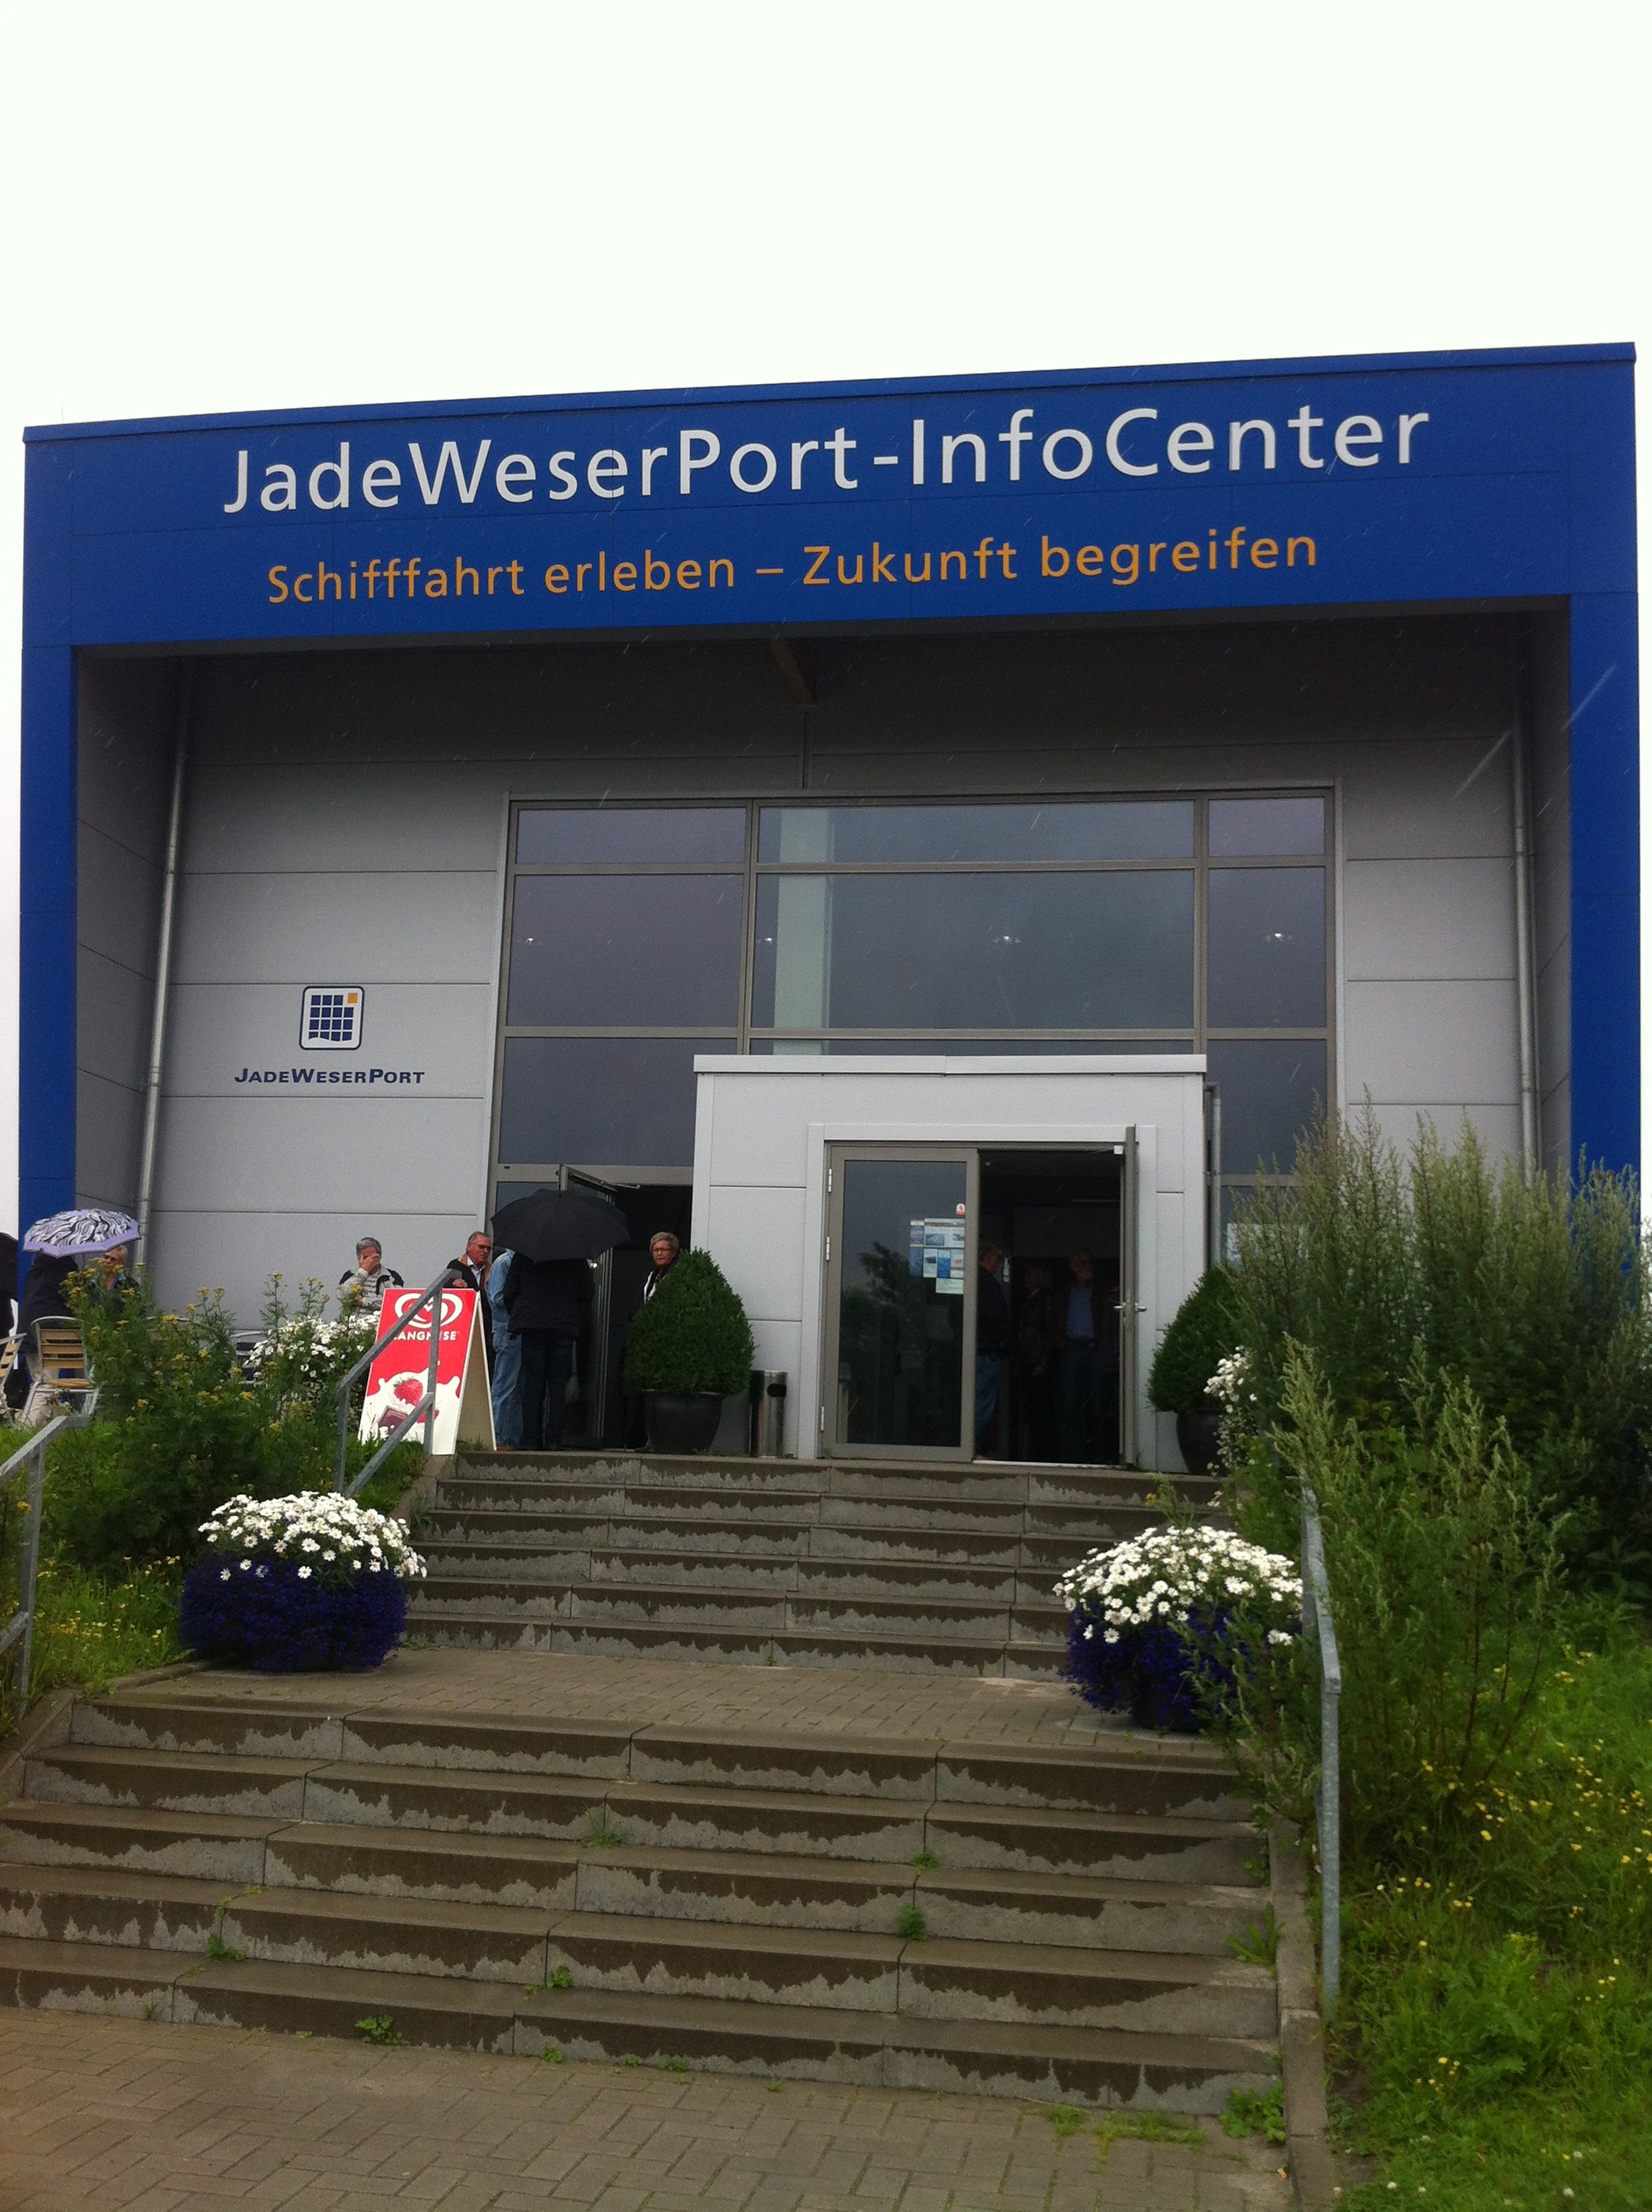 JadeWeserPort Infocenter in Wilhelmshaven